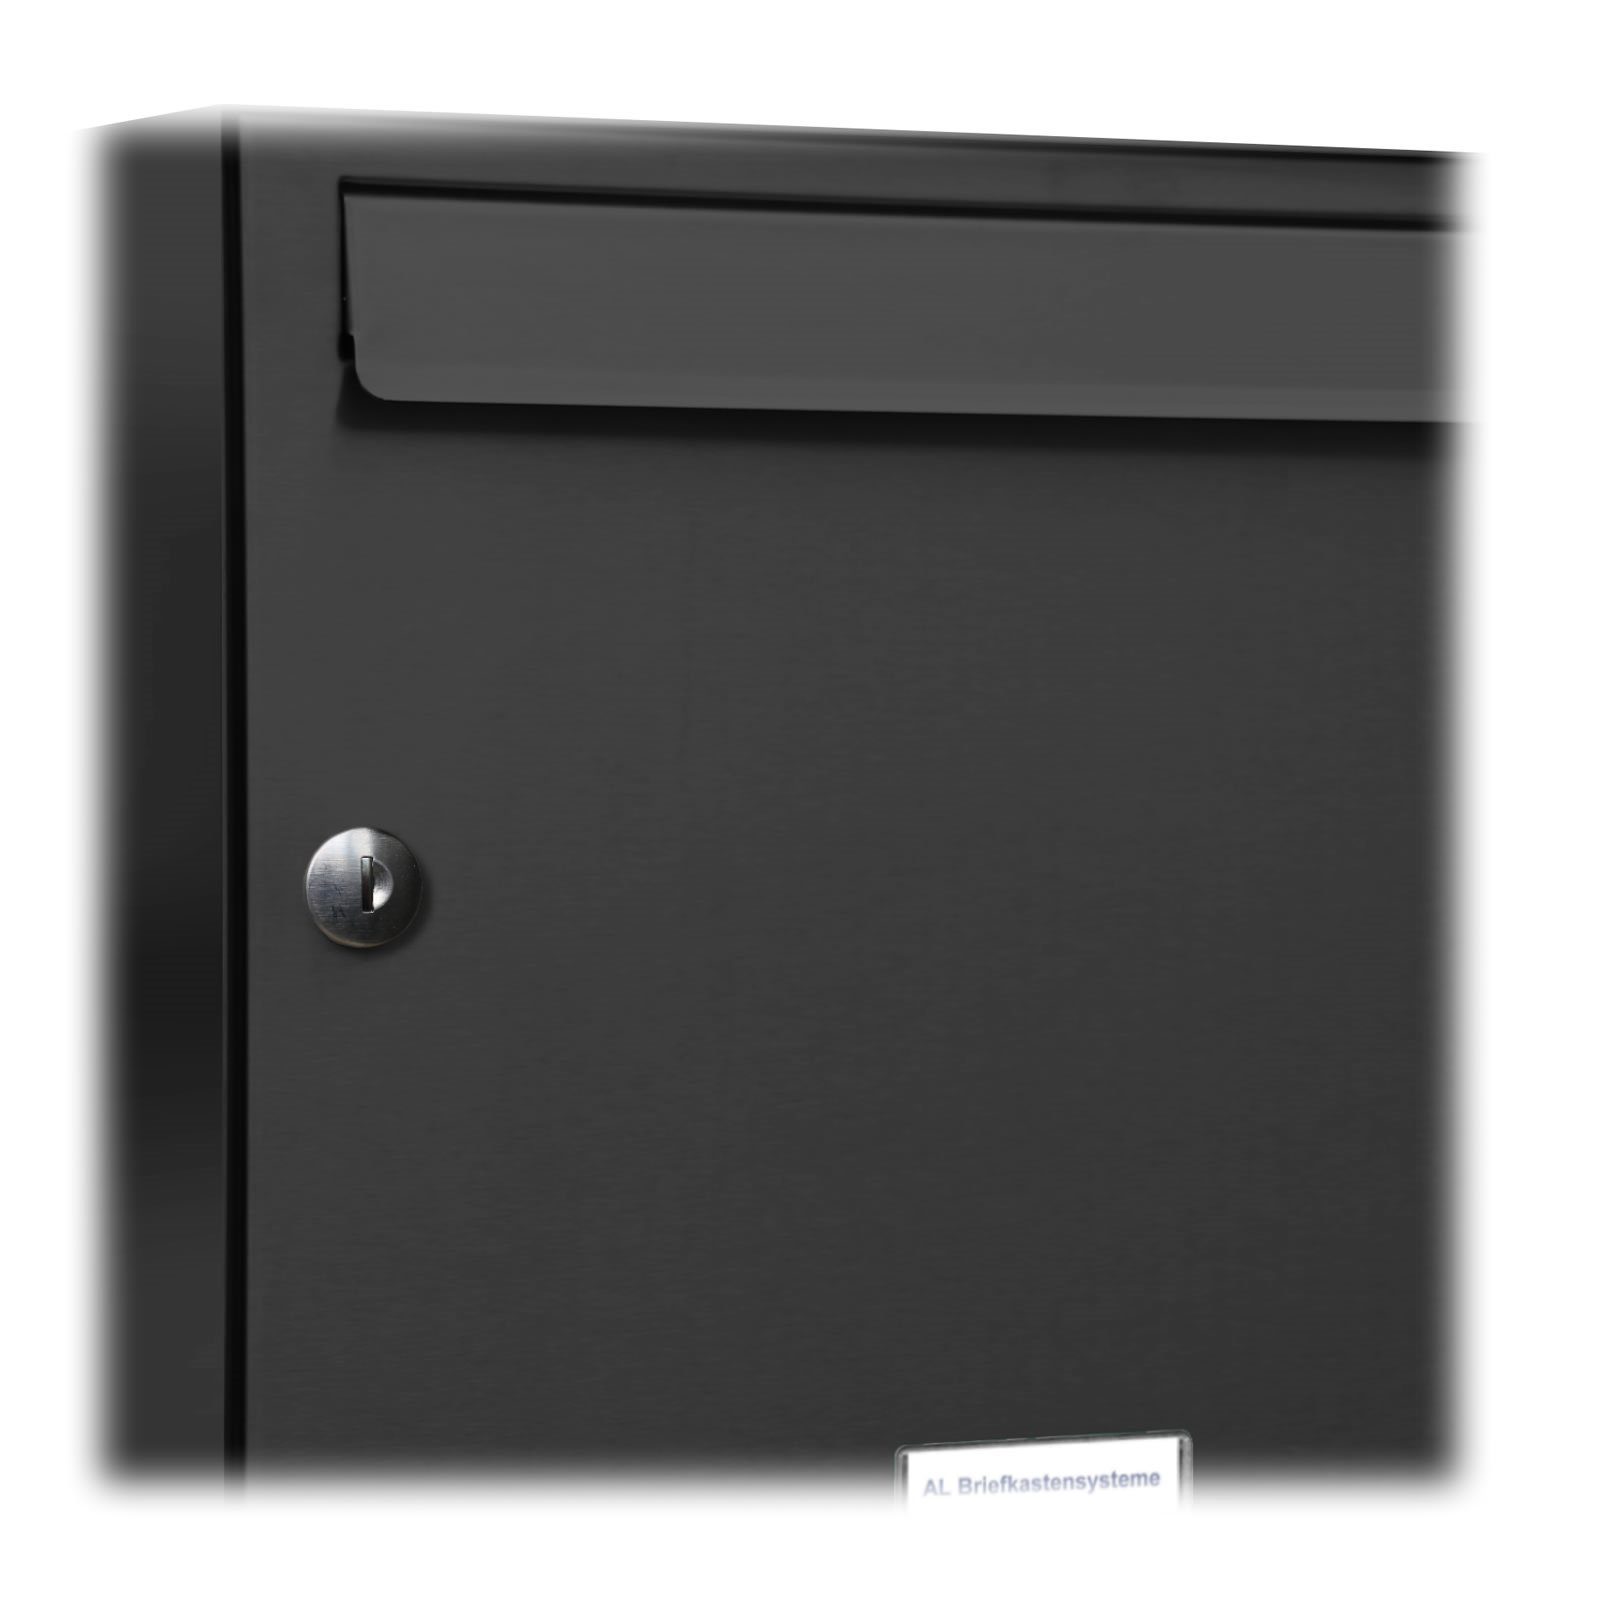 AL Briefkastensysteme Farbe Wand Briefkasten Außen 3er für 3x1 RAL 7016 Anthrazit Premium Wandbriefkasten